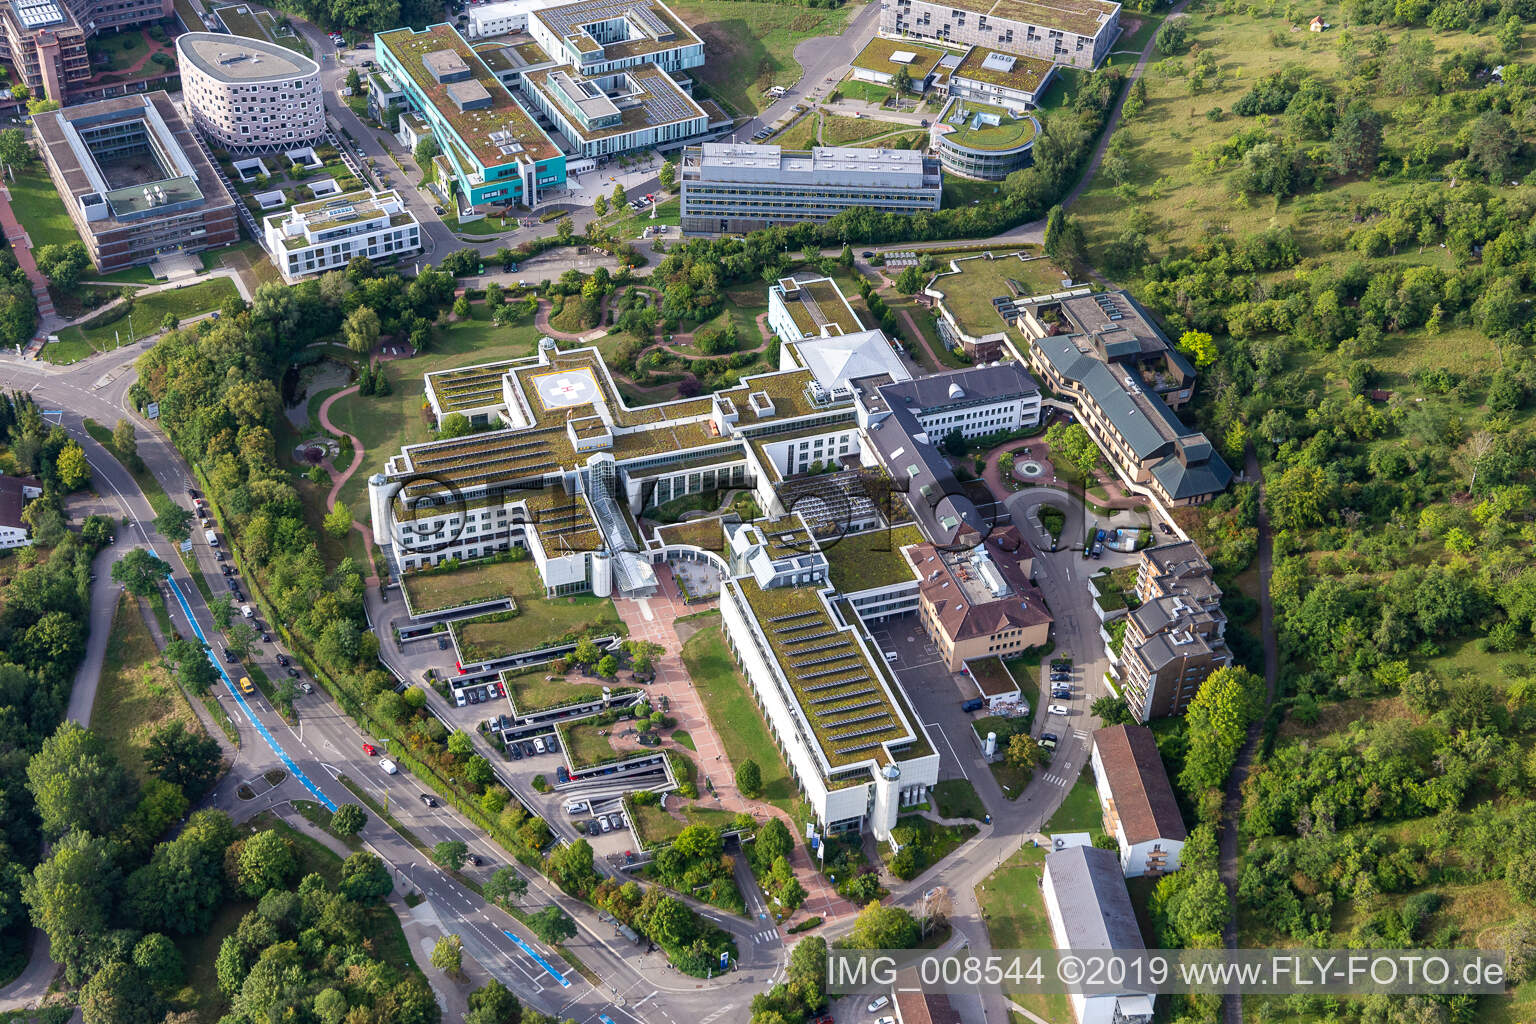 BG Unfallklinik Tübingen im Bundesland Baden-Württemberg, Deutschland aus der Drohnenperspektive